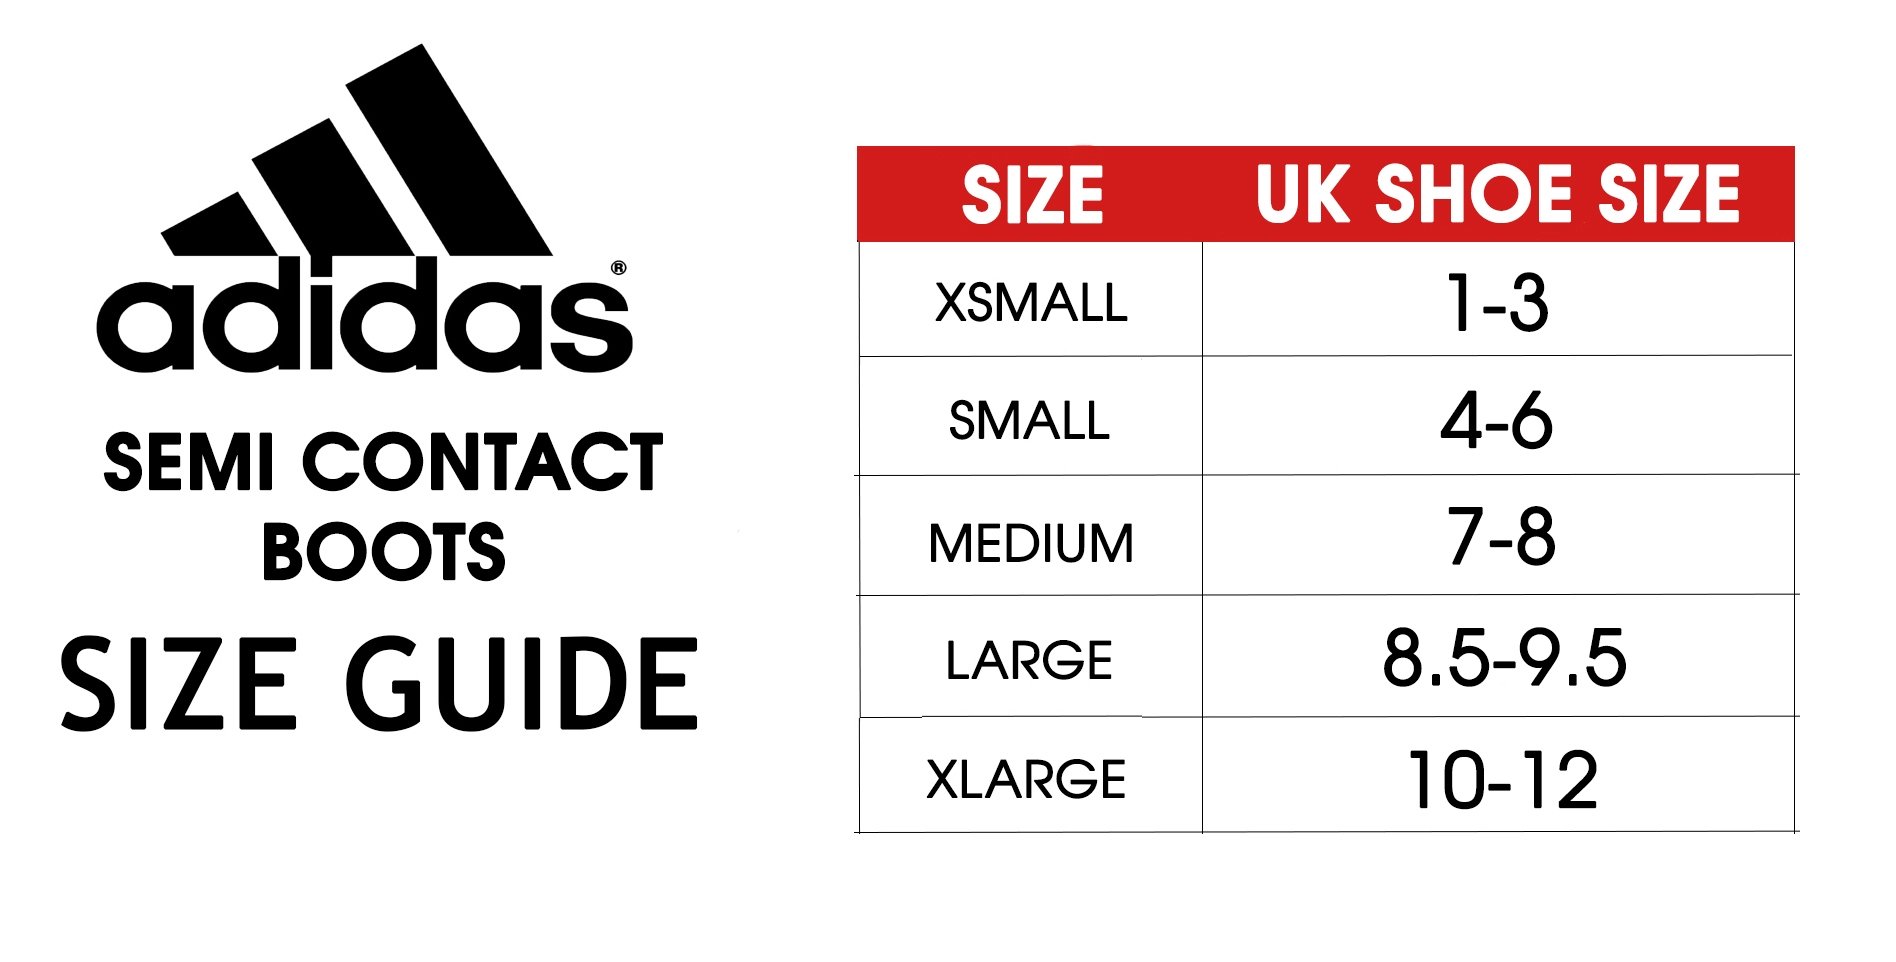 adidas contact uk